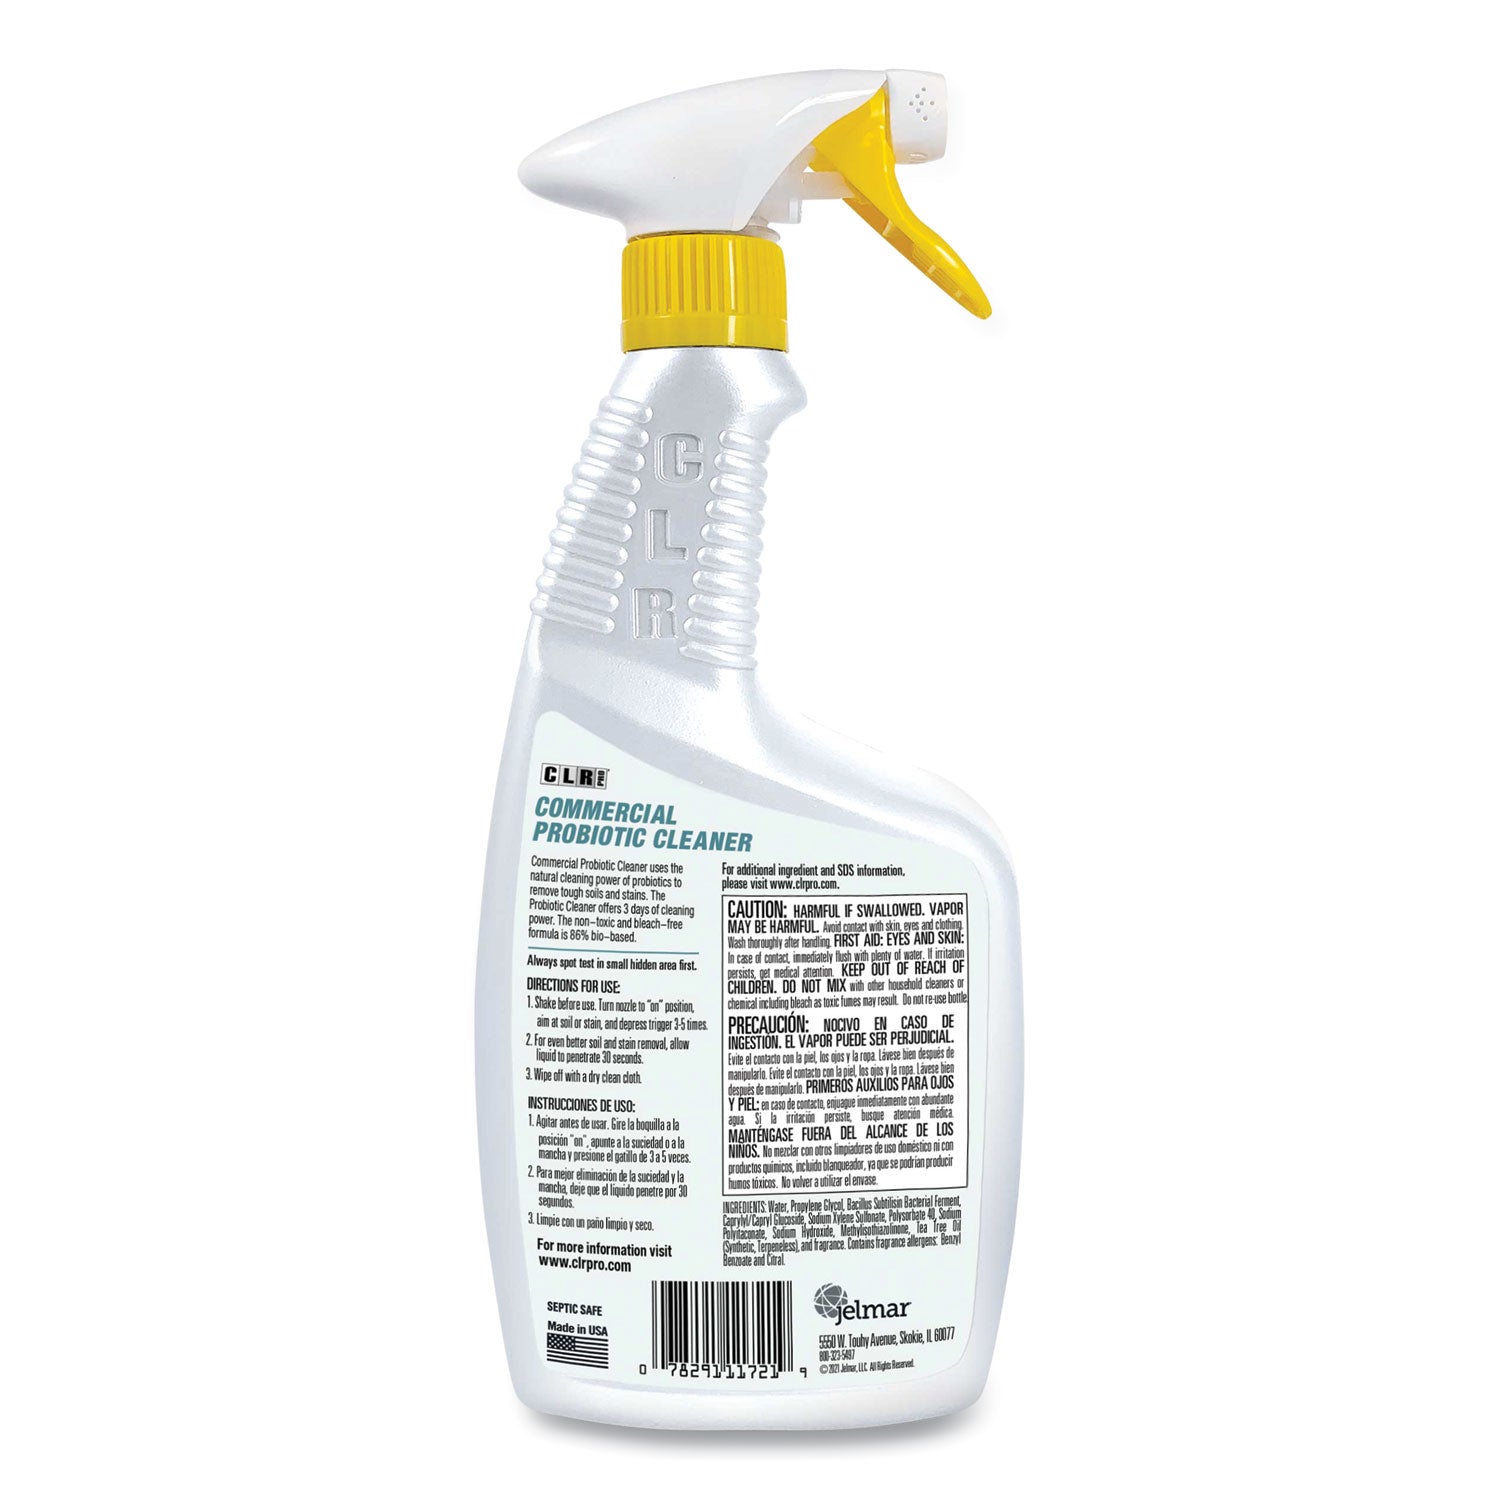 commercial-probiotic-cleaner-lemon-scent-32-oz-spray-bottle-6-carton_jelfmcpc326pro - 2